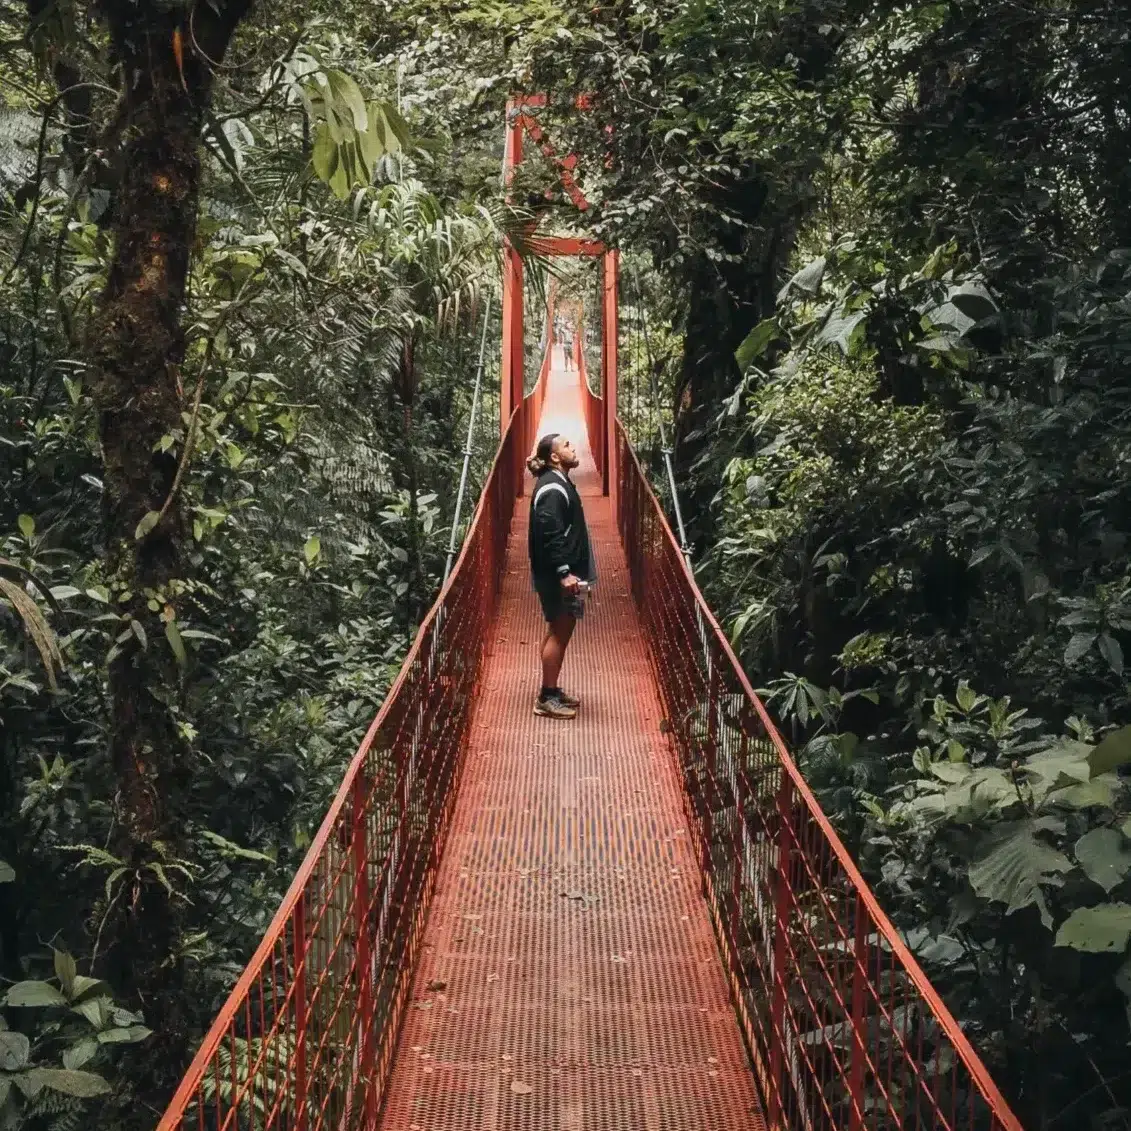 Pierre standing on the Mistico Hanging Bridge in La Fortuna, Costa Rica